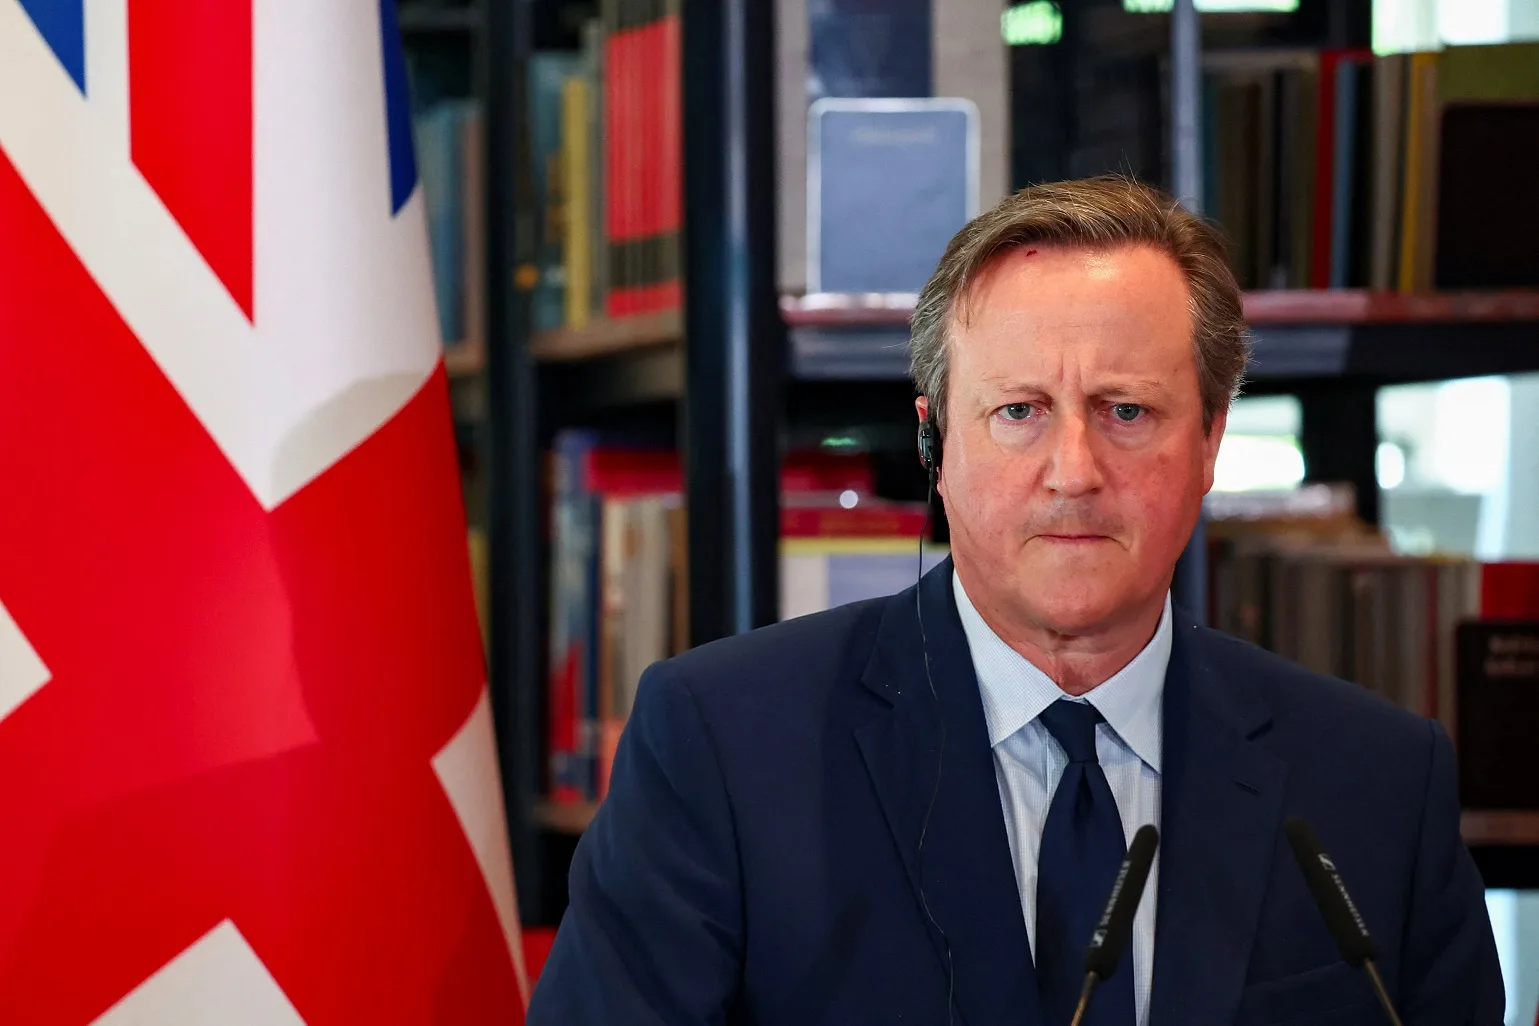 Olha o trote: secretário do Reino Unido faz chamada de vídeo com charlatão